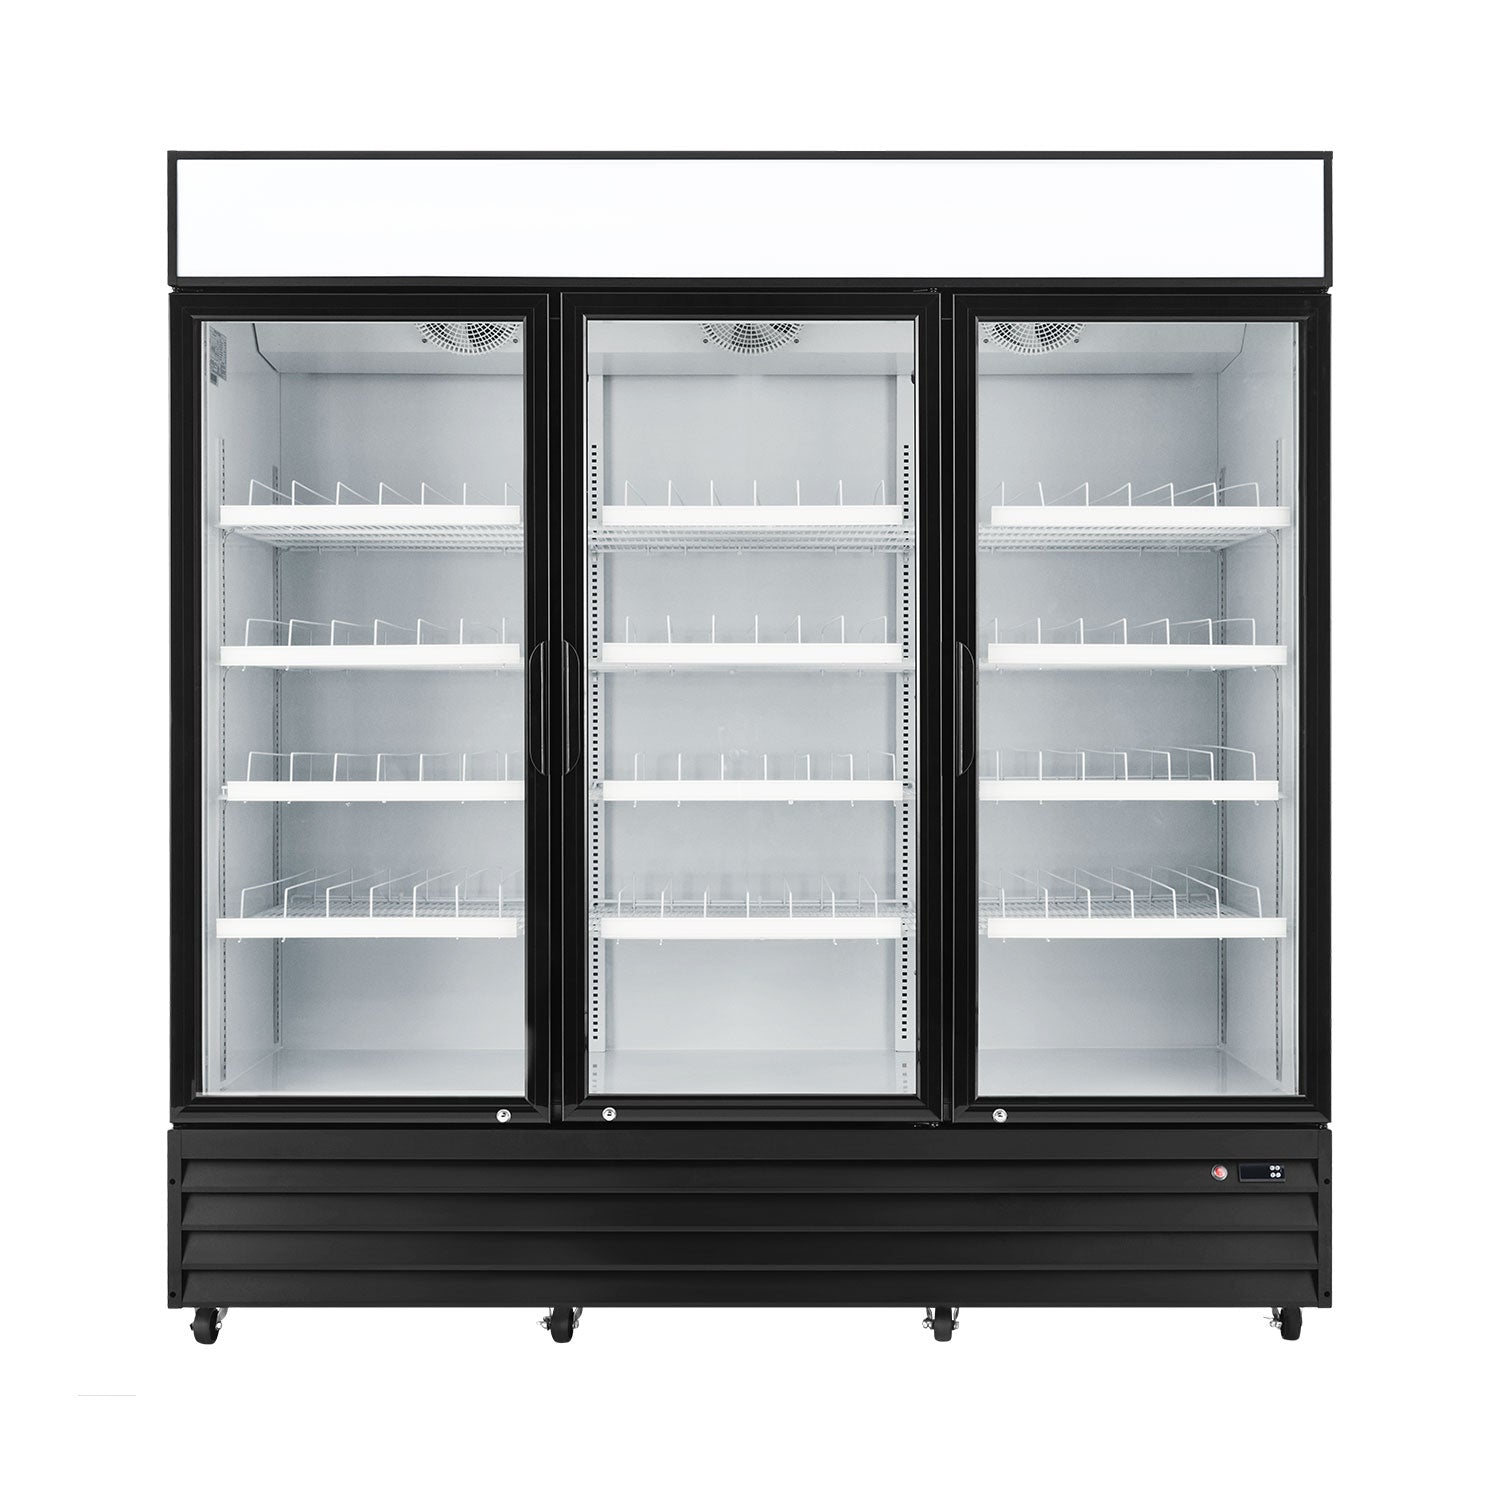 Buy Wilprep 3-door Commercial Refrigerator for Sale